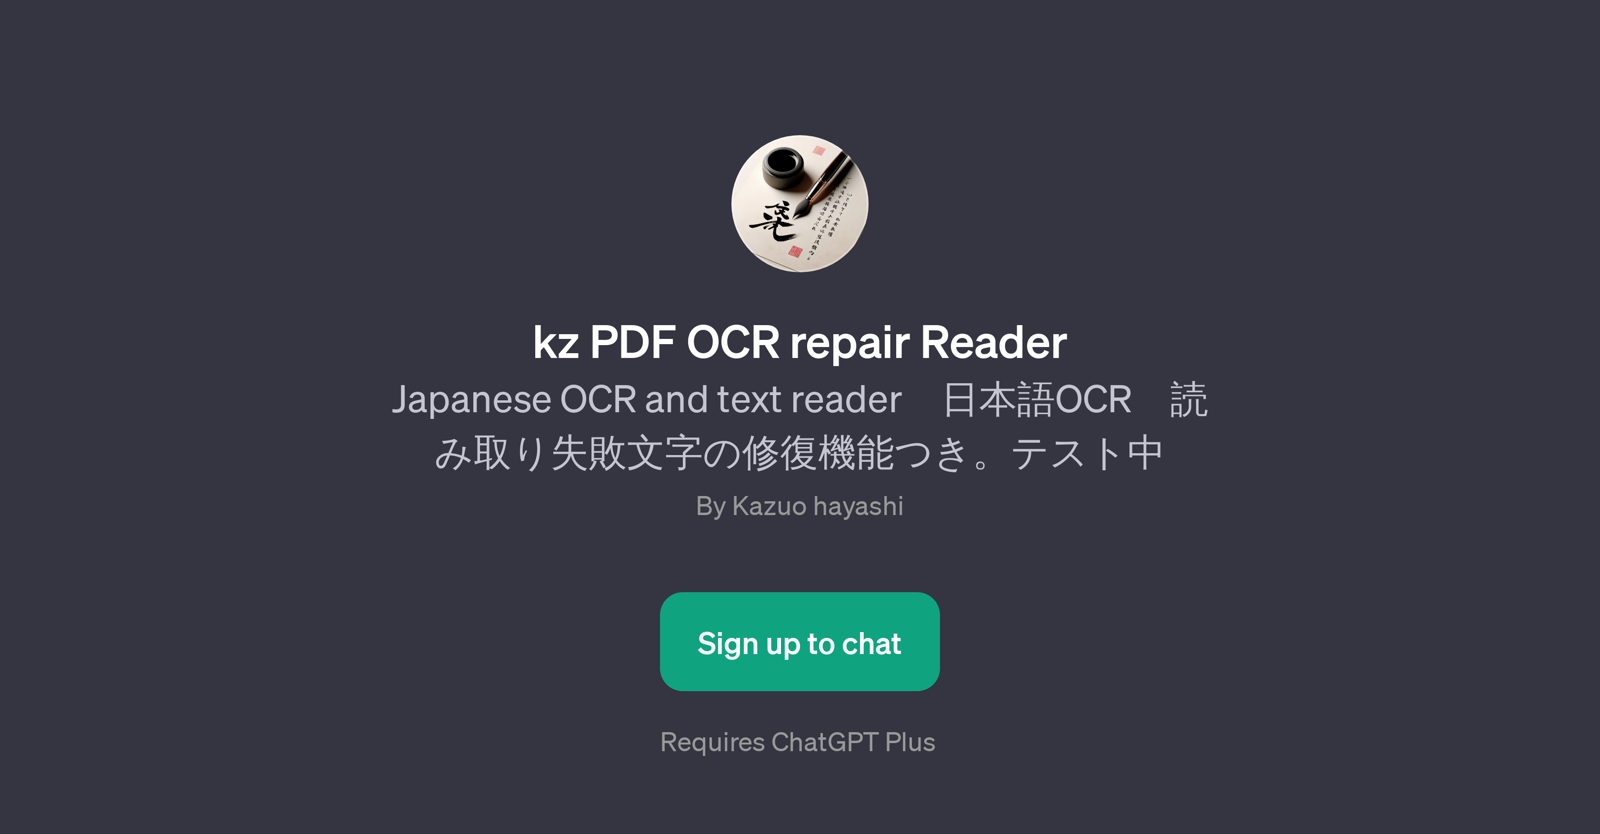 kz PDF OCR repair Reader website